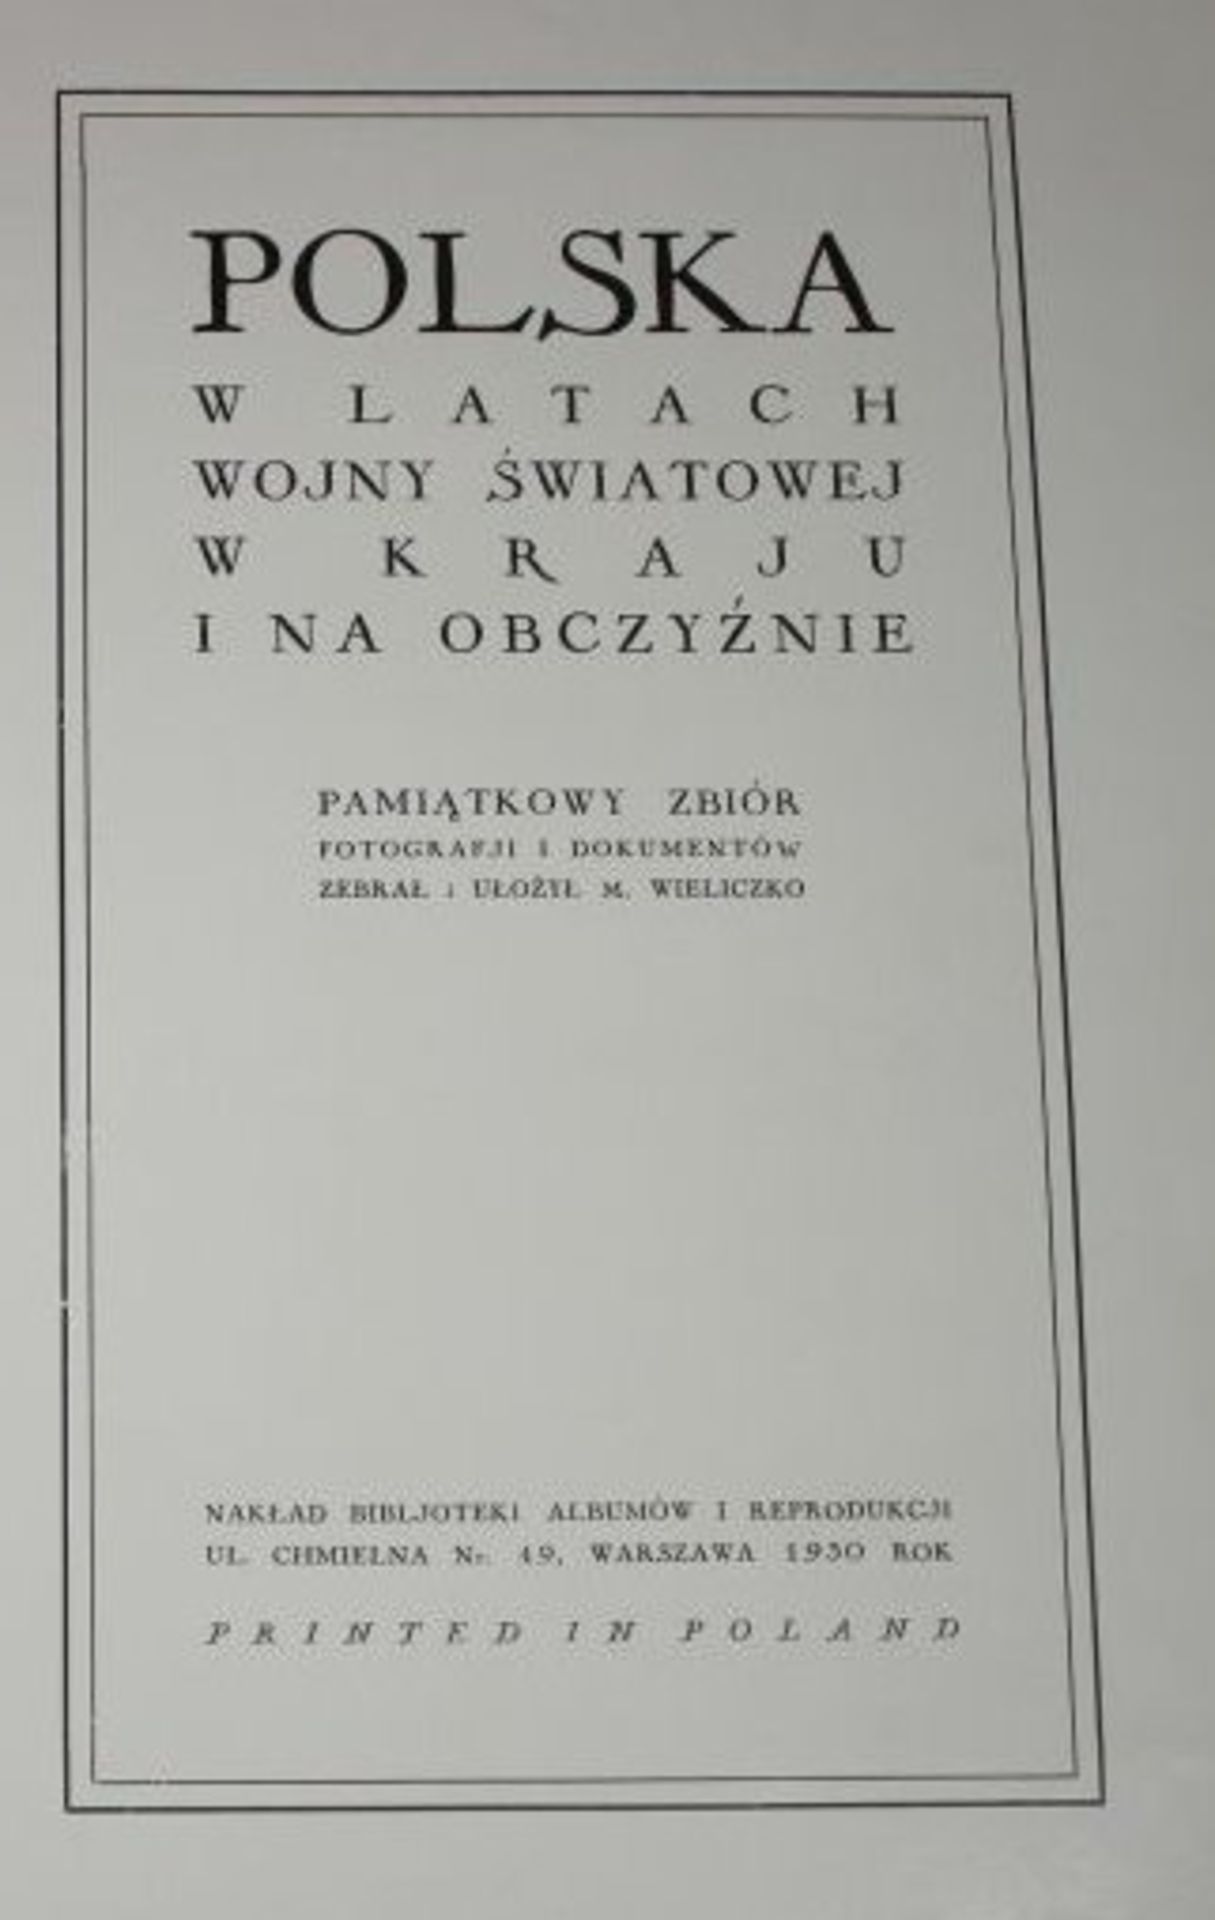 Polska W Latach Wjony Swiatowej w Kraji i na Obczyznie, Pimiatkowy Zbior, 1930 - Bild 2 aus 3